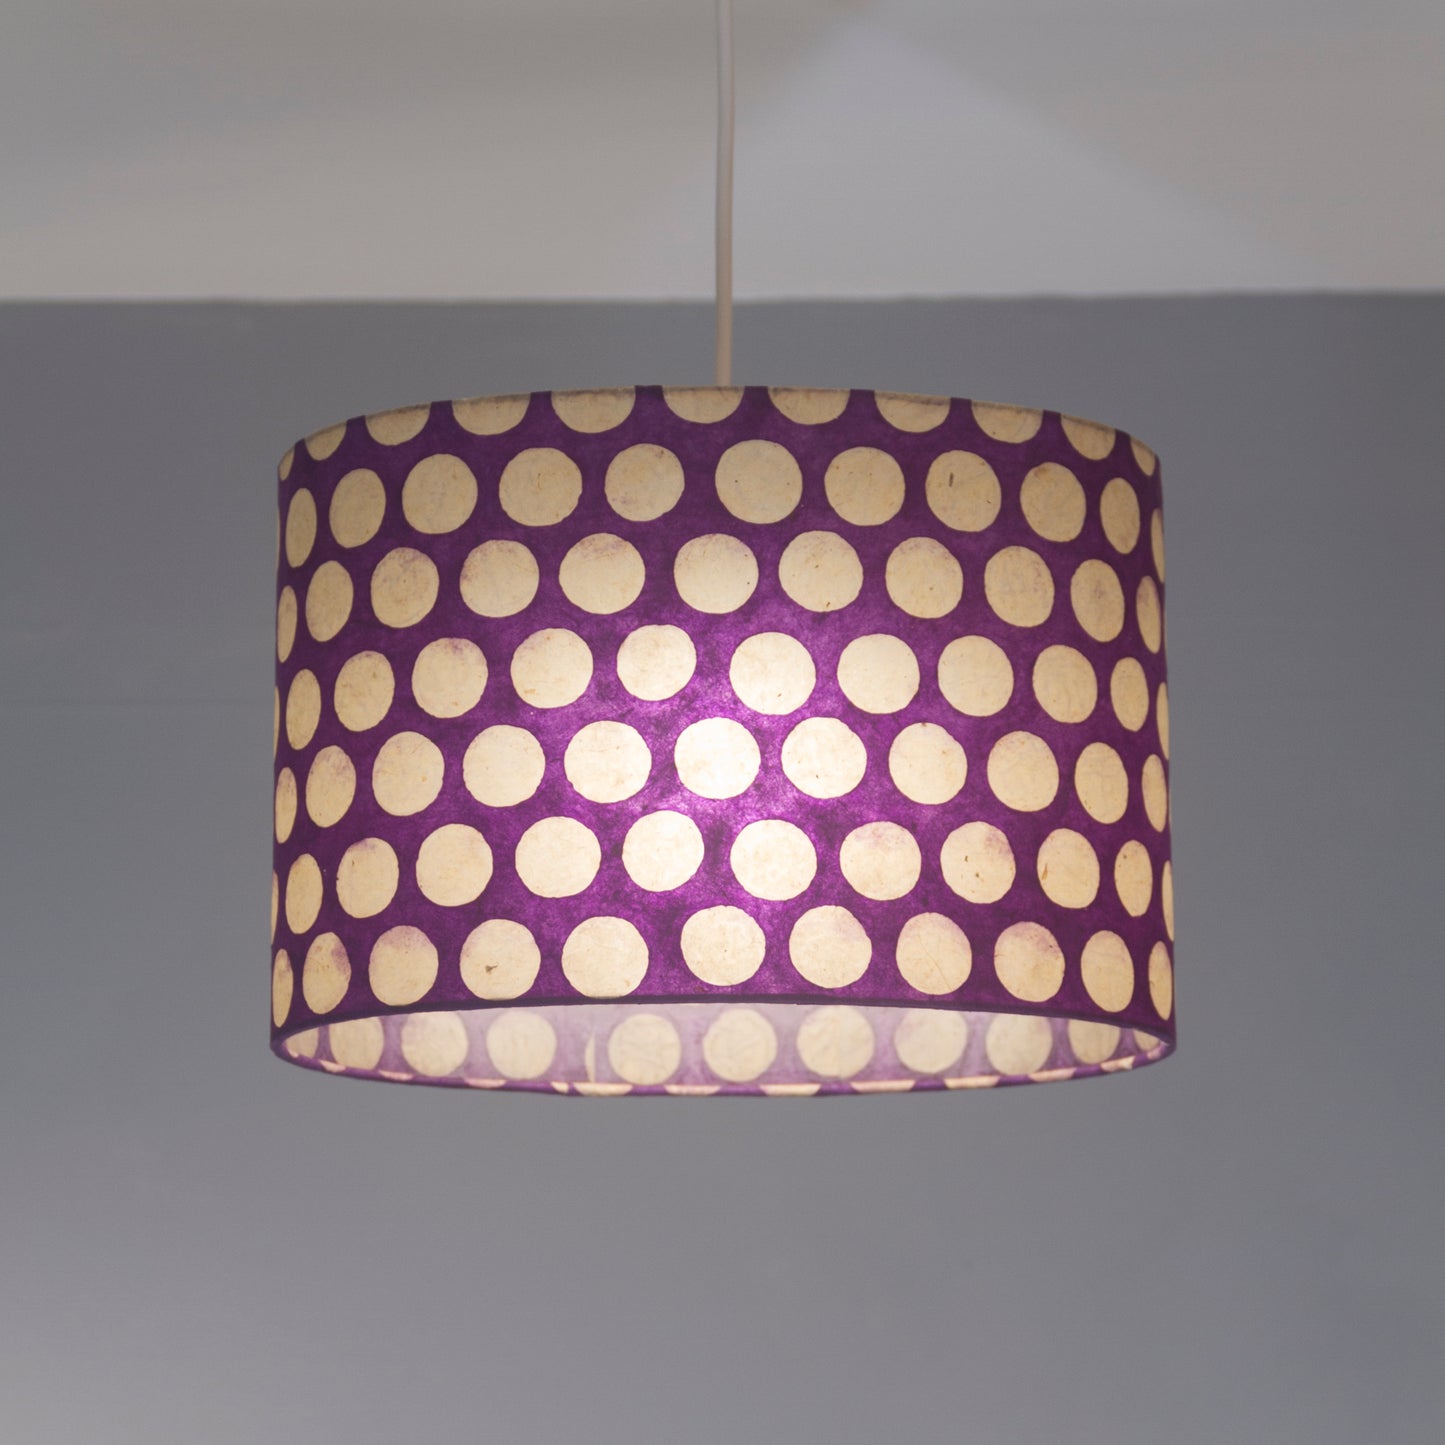 Drum Lamp Shade - P79 - Batik Dots Purple, 70cm(d) x 30cm(h)